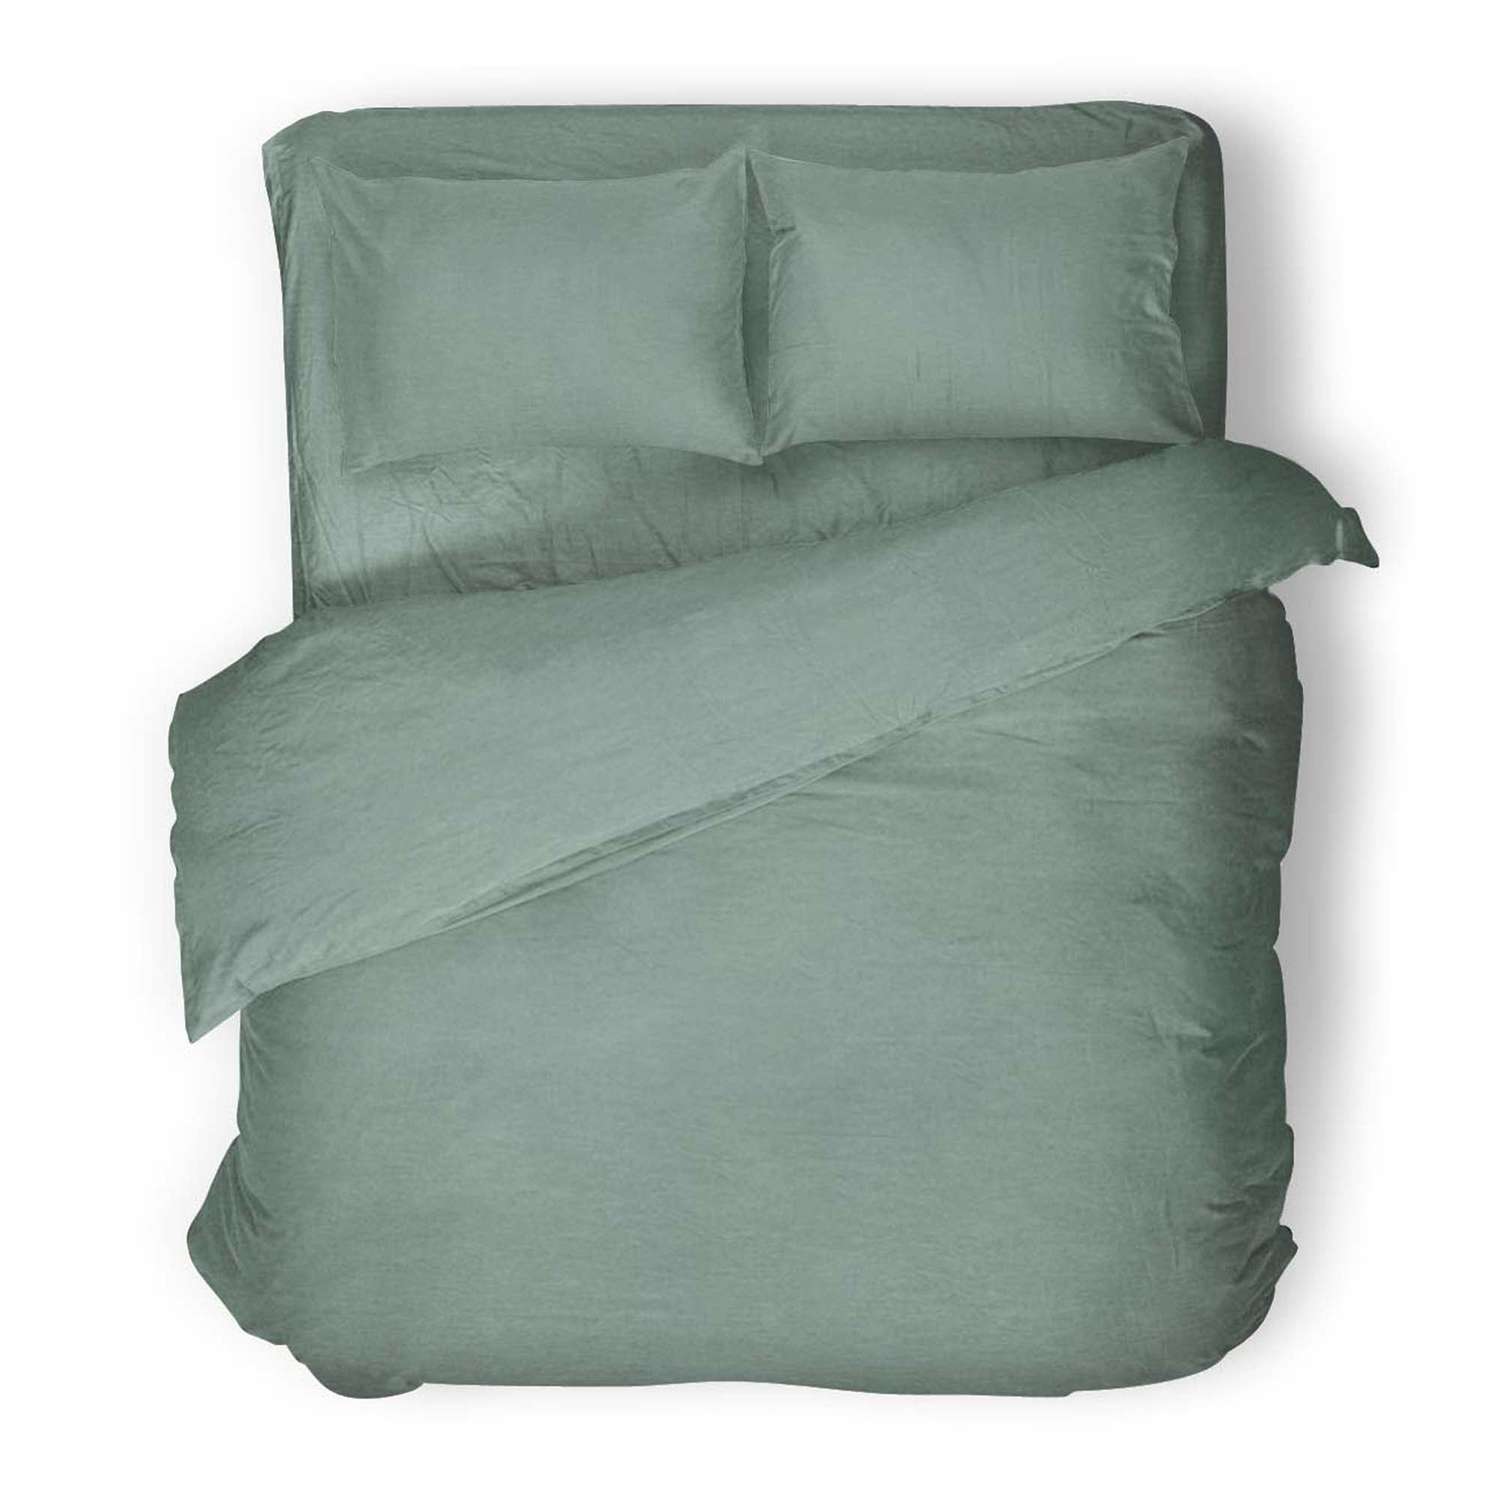 Комплект постельного белья Absolut Евро Emerald наволочки 70х70 и 50х70см меланж - фото 1